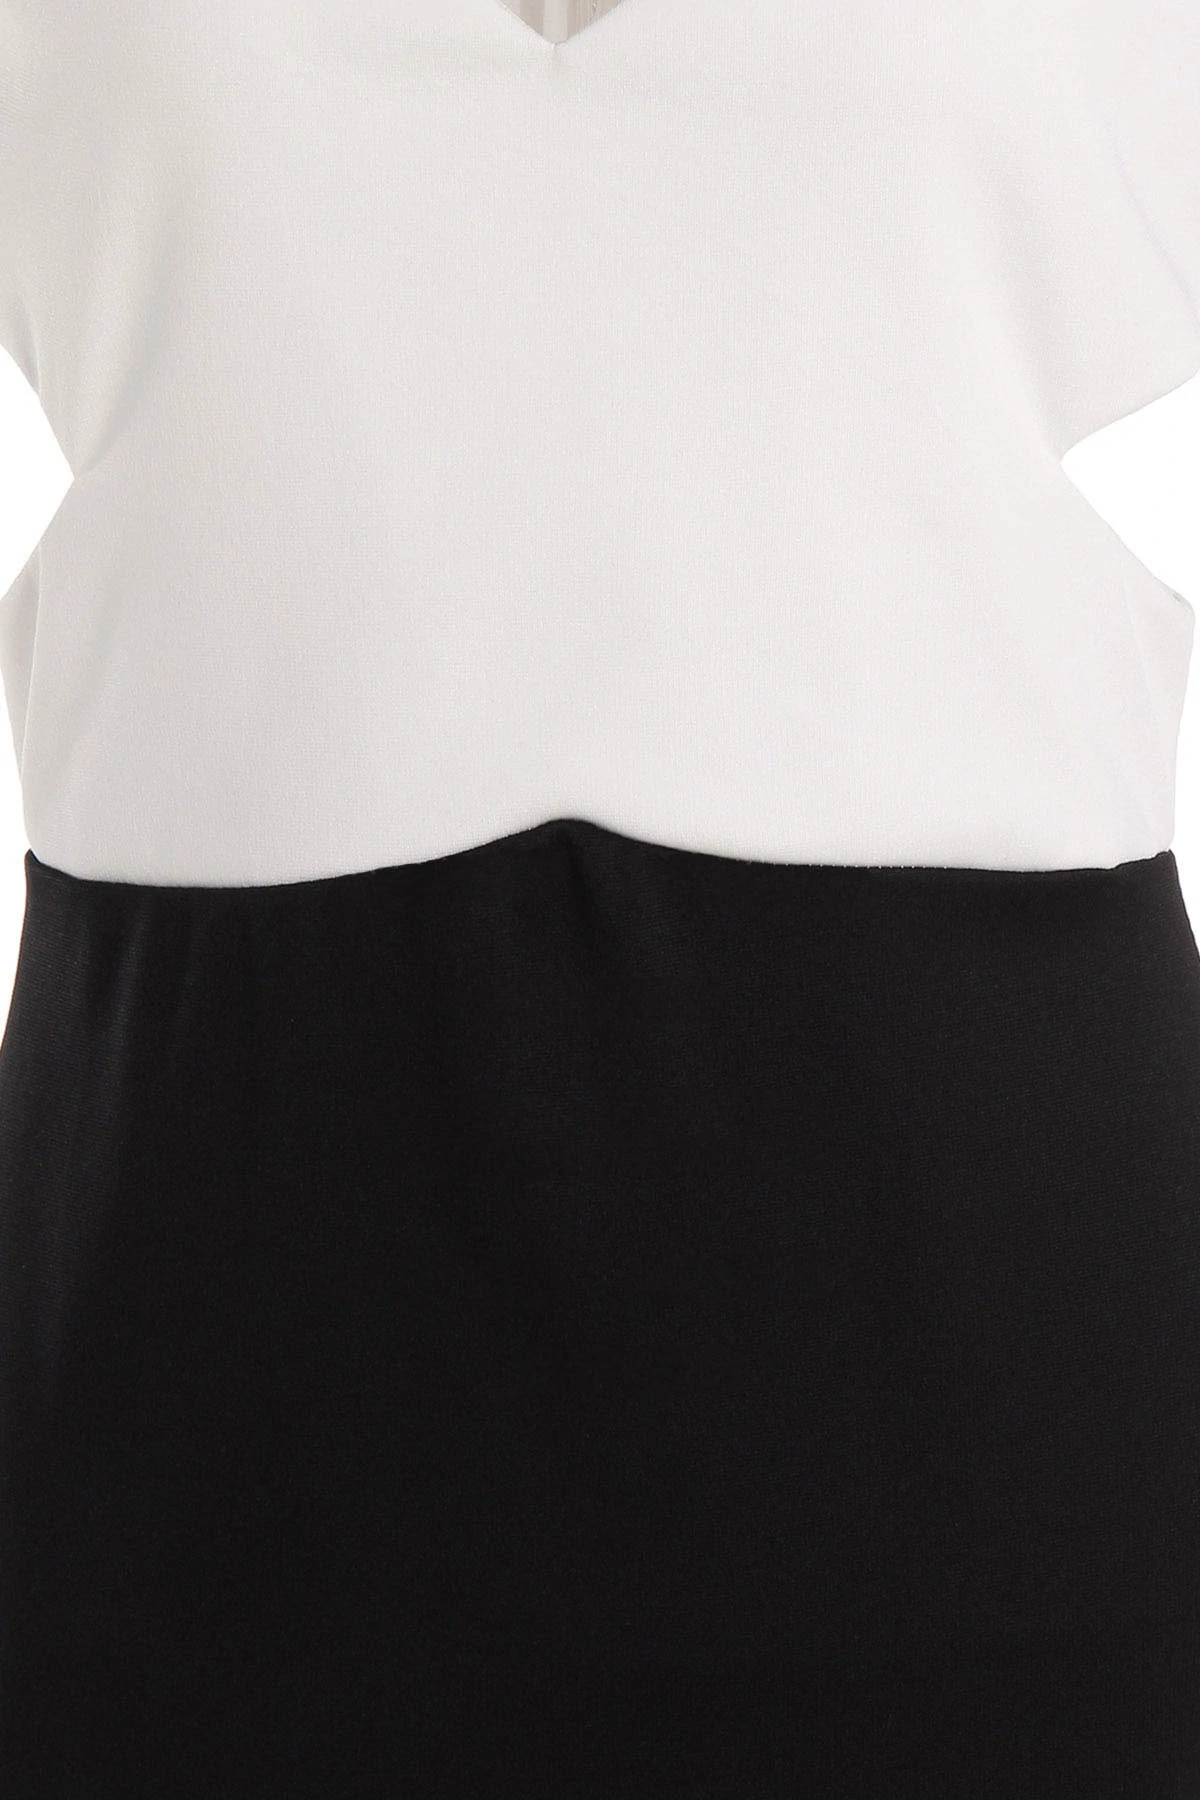 M0157 blackwhite3 Office Evening Dresses maureens.com boutique